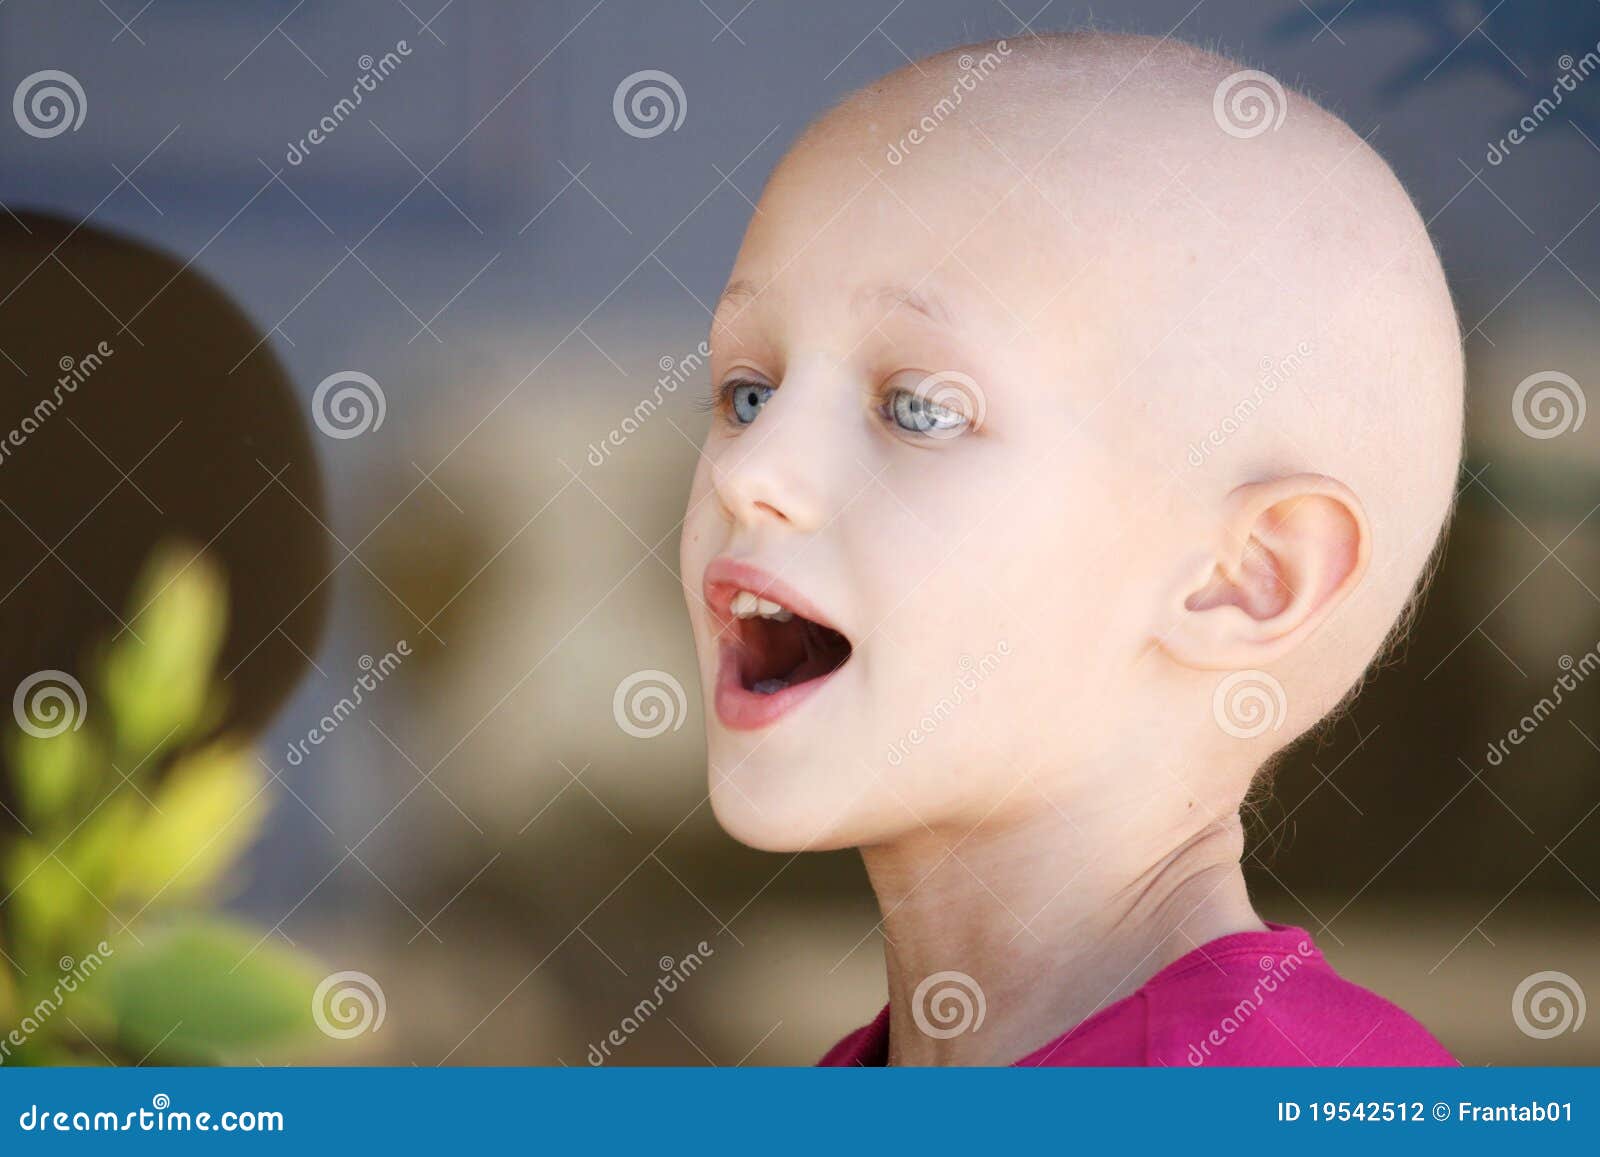 国际儿童癌症日 | 我们希望成为孩子们的盔甲_肿瘤_治疗_原因